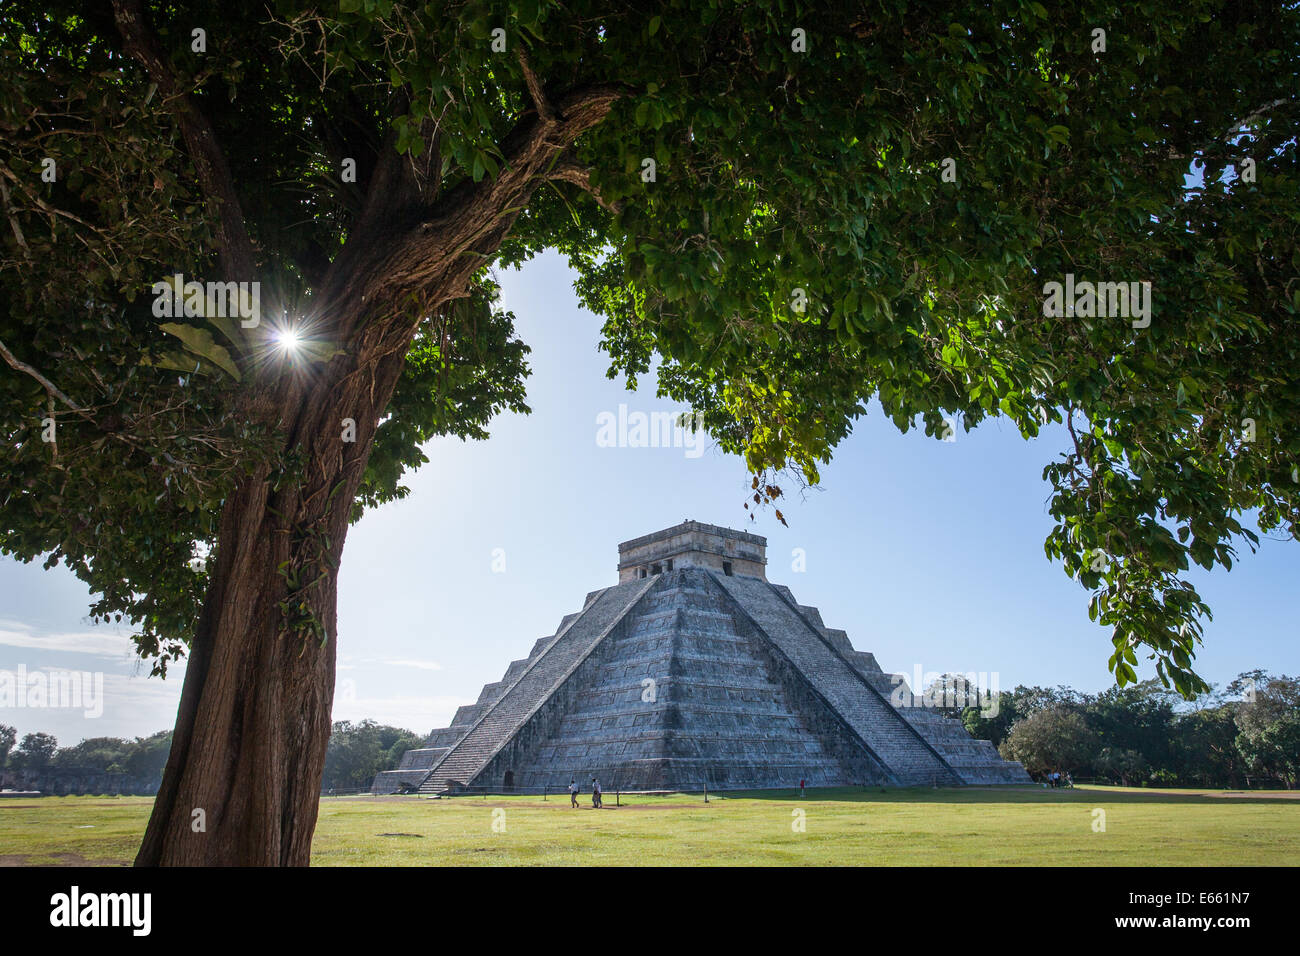 El Castillo pyramide de Chichen Itza, Yucatan, Mexique. Banque D'Images